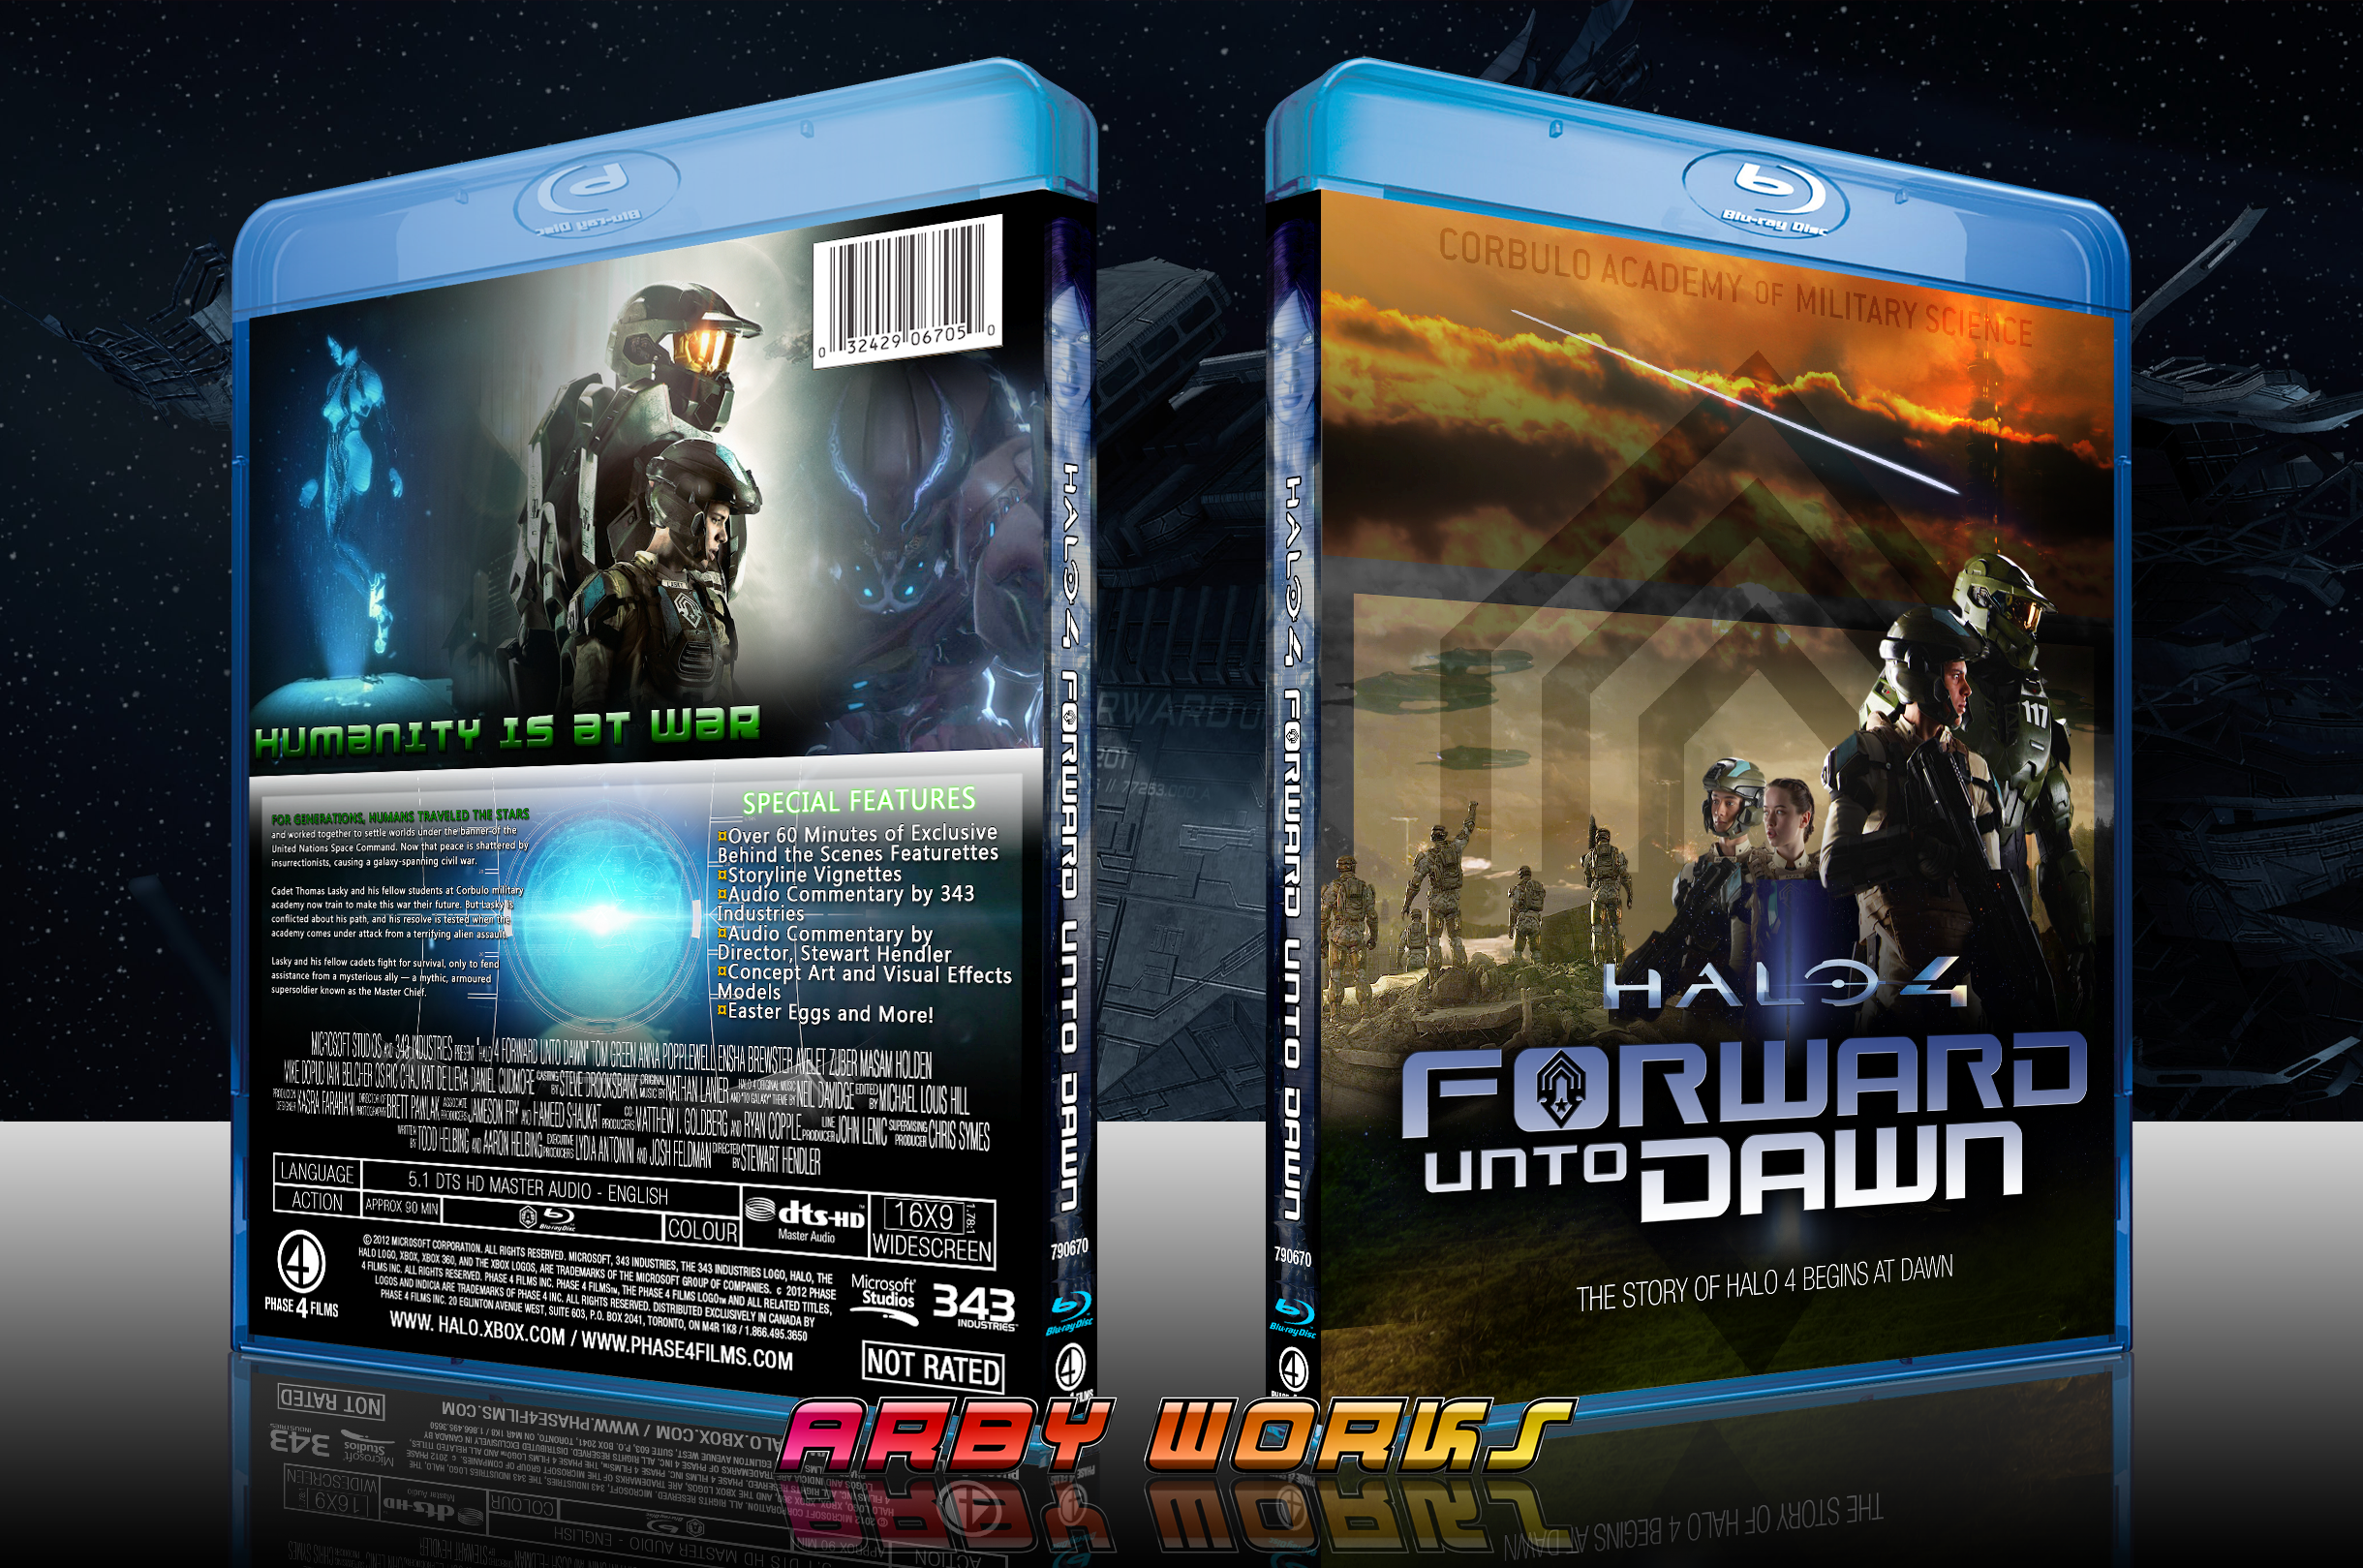 Halo 4: FORWARD UNTO DAWN box cover